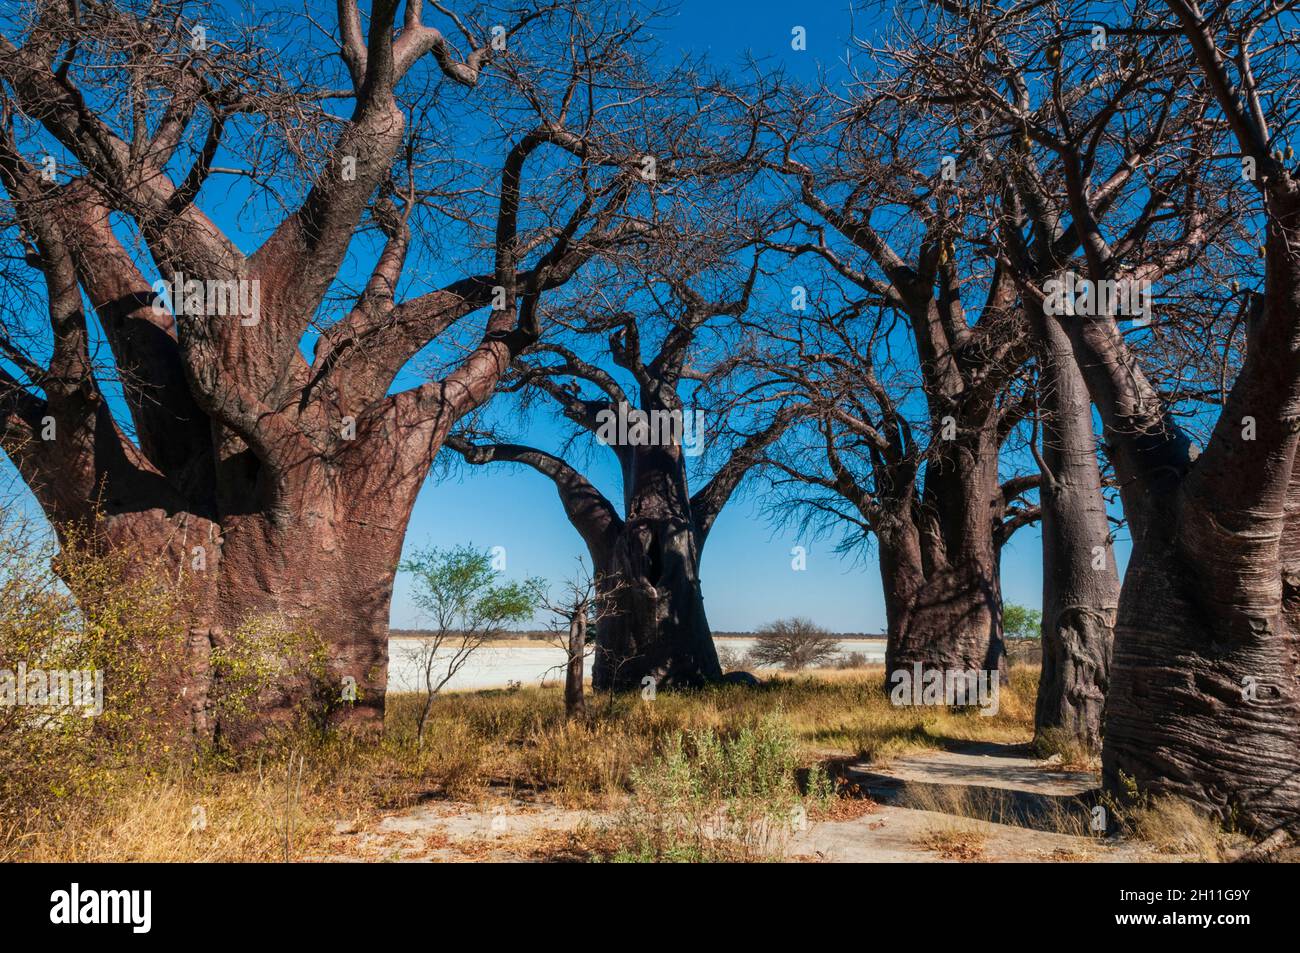 Los Baobabs Baobab Baobab árboles, Adansonia digitata. Esta formación de árboles de baobab también se conoce como las Hermanas Durmiente. Baobabs Baobabs, Kudiakam Pa Foto de stock